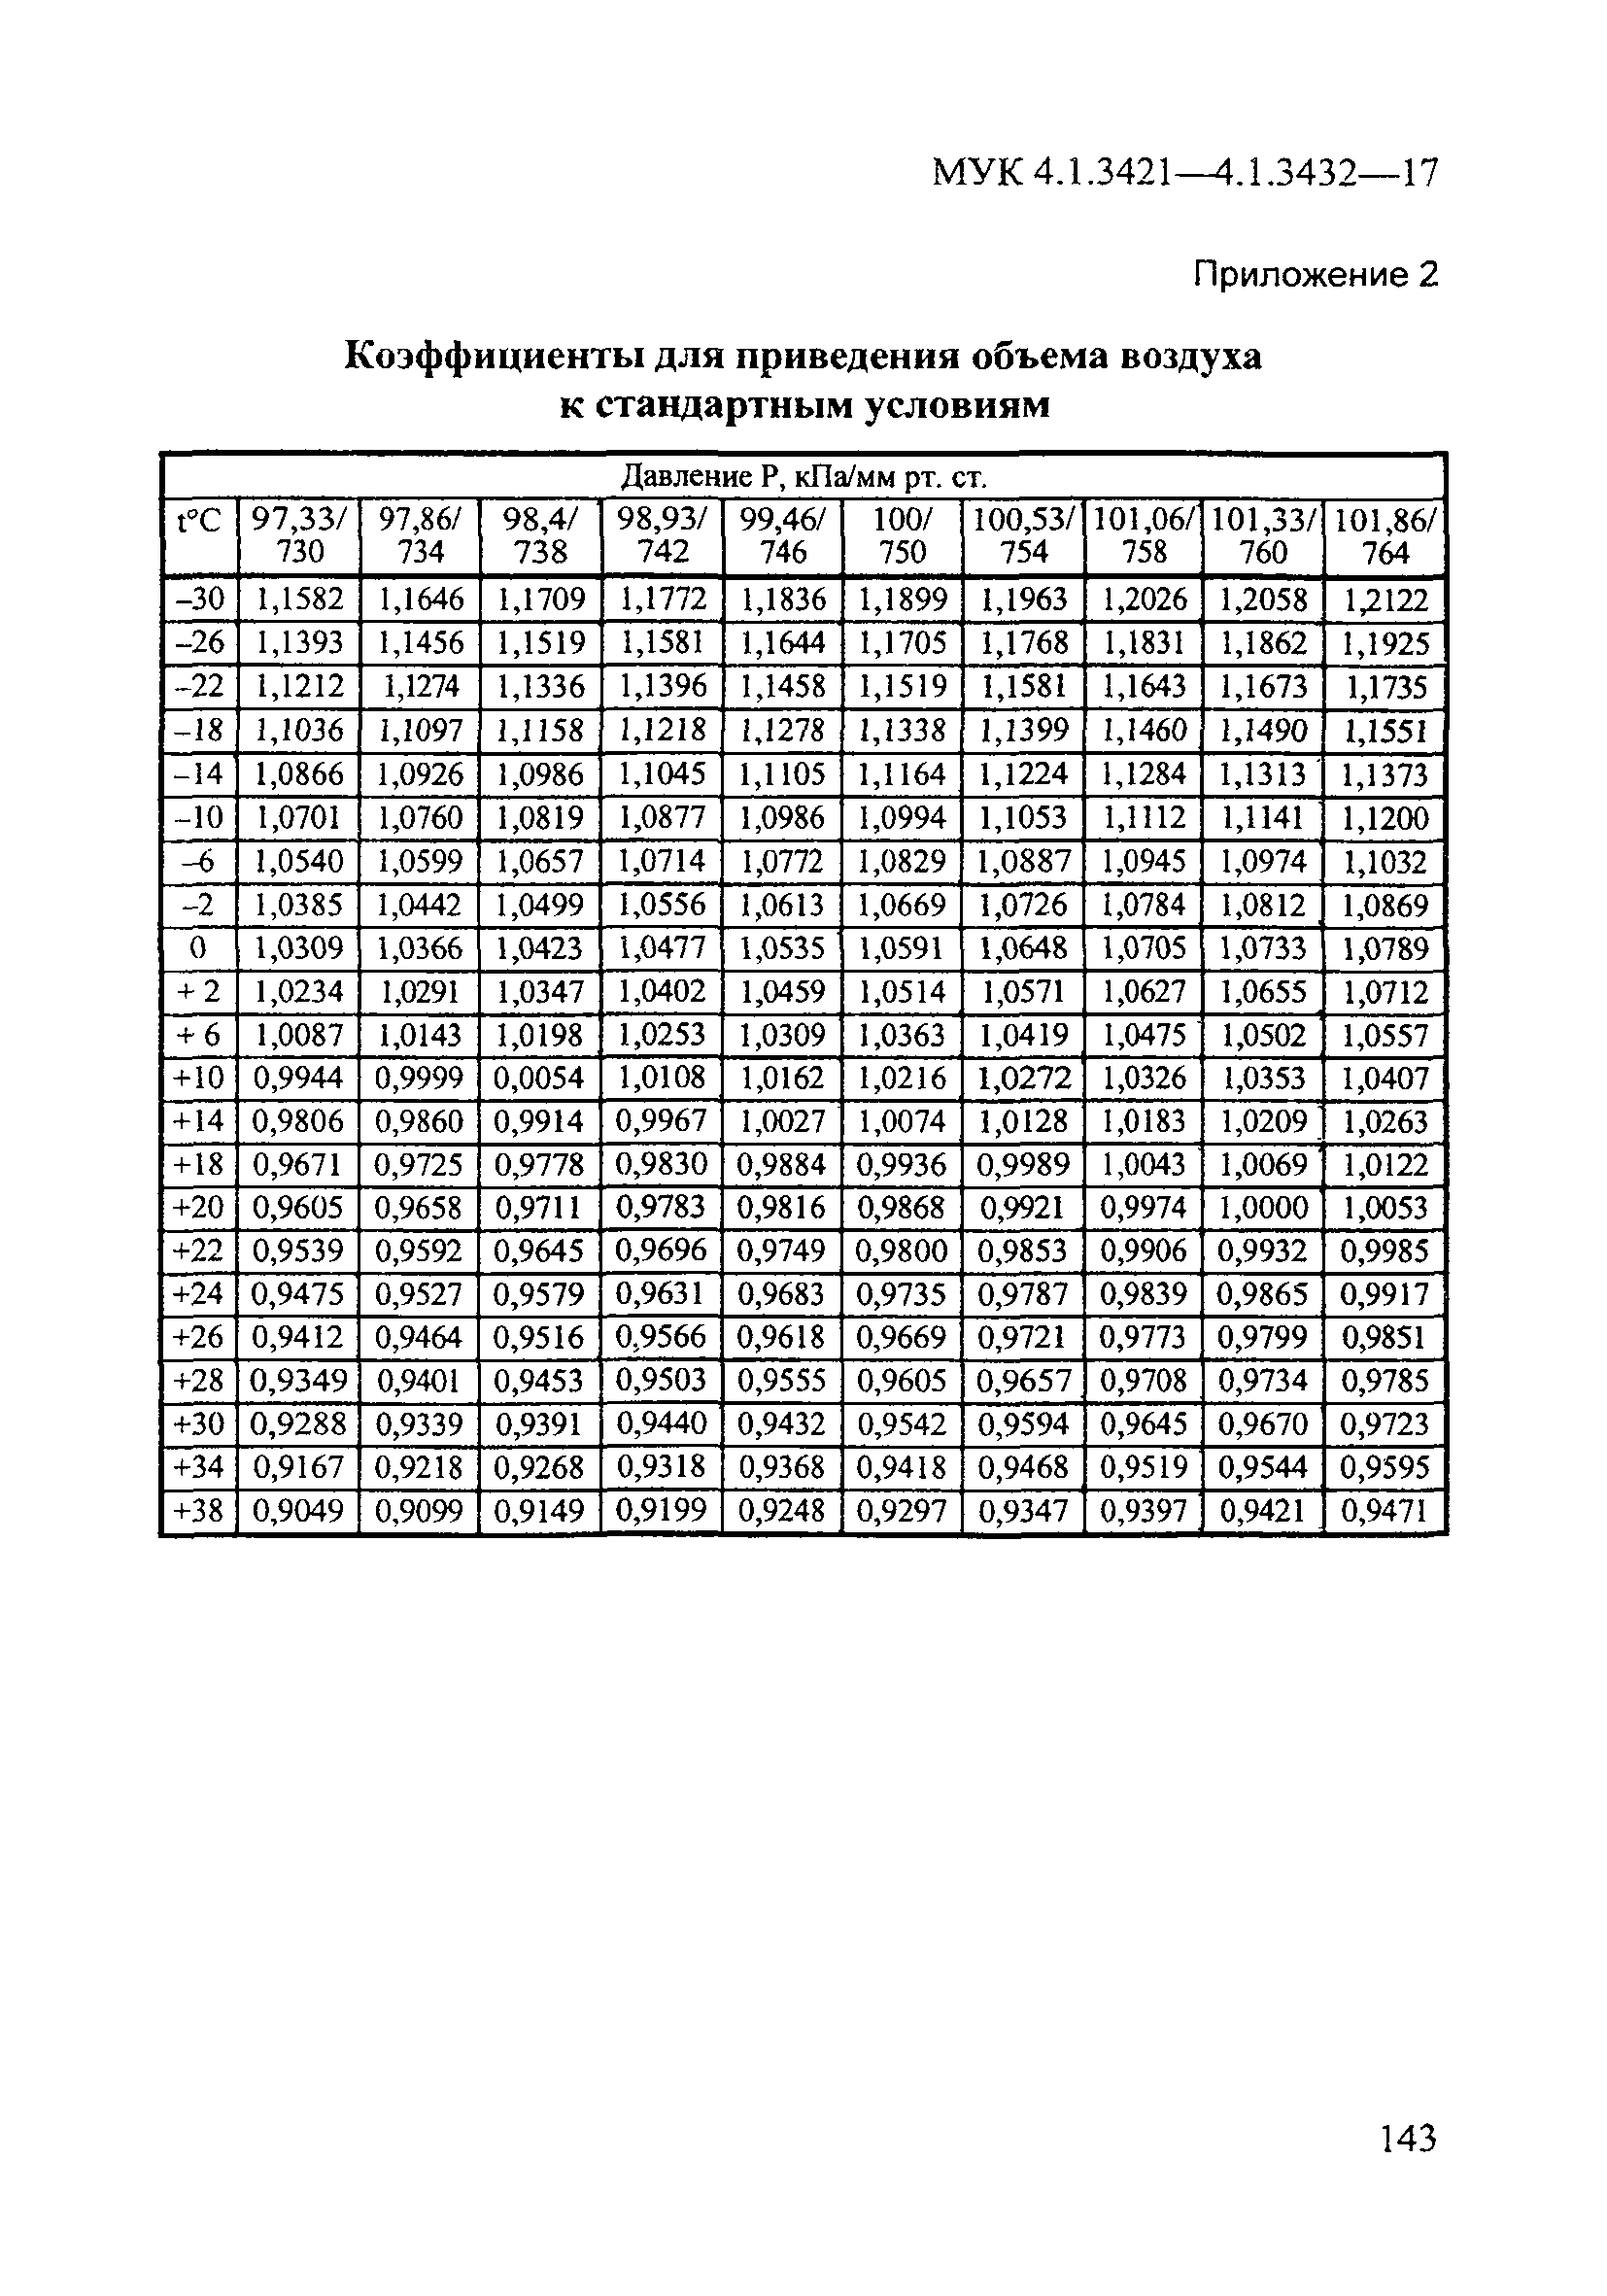 МУК 4.1.3421-17